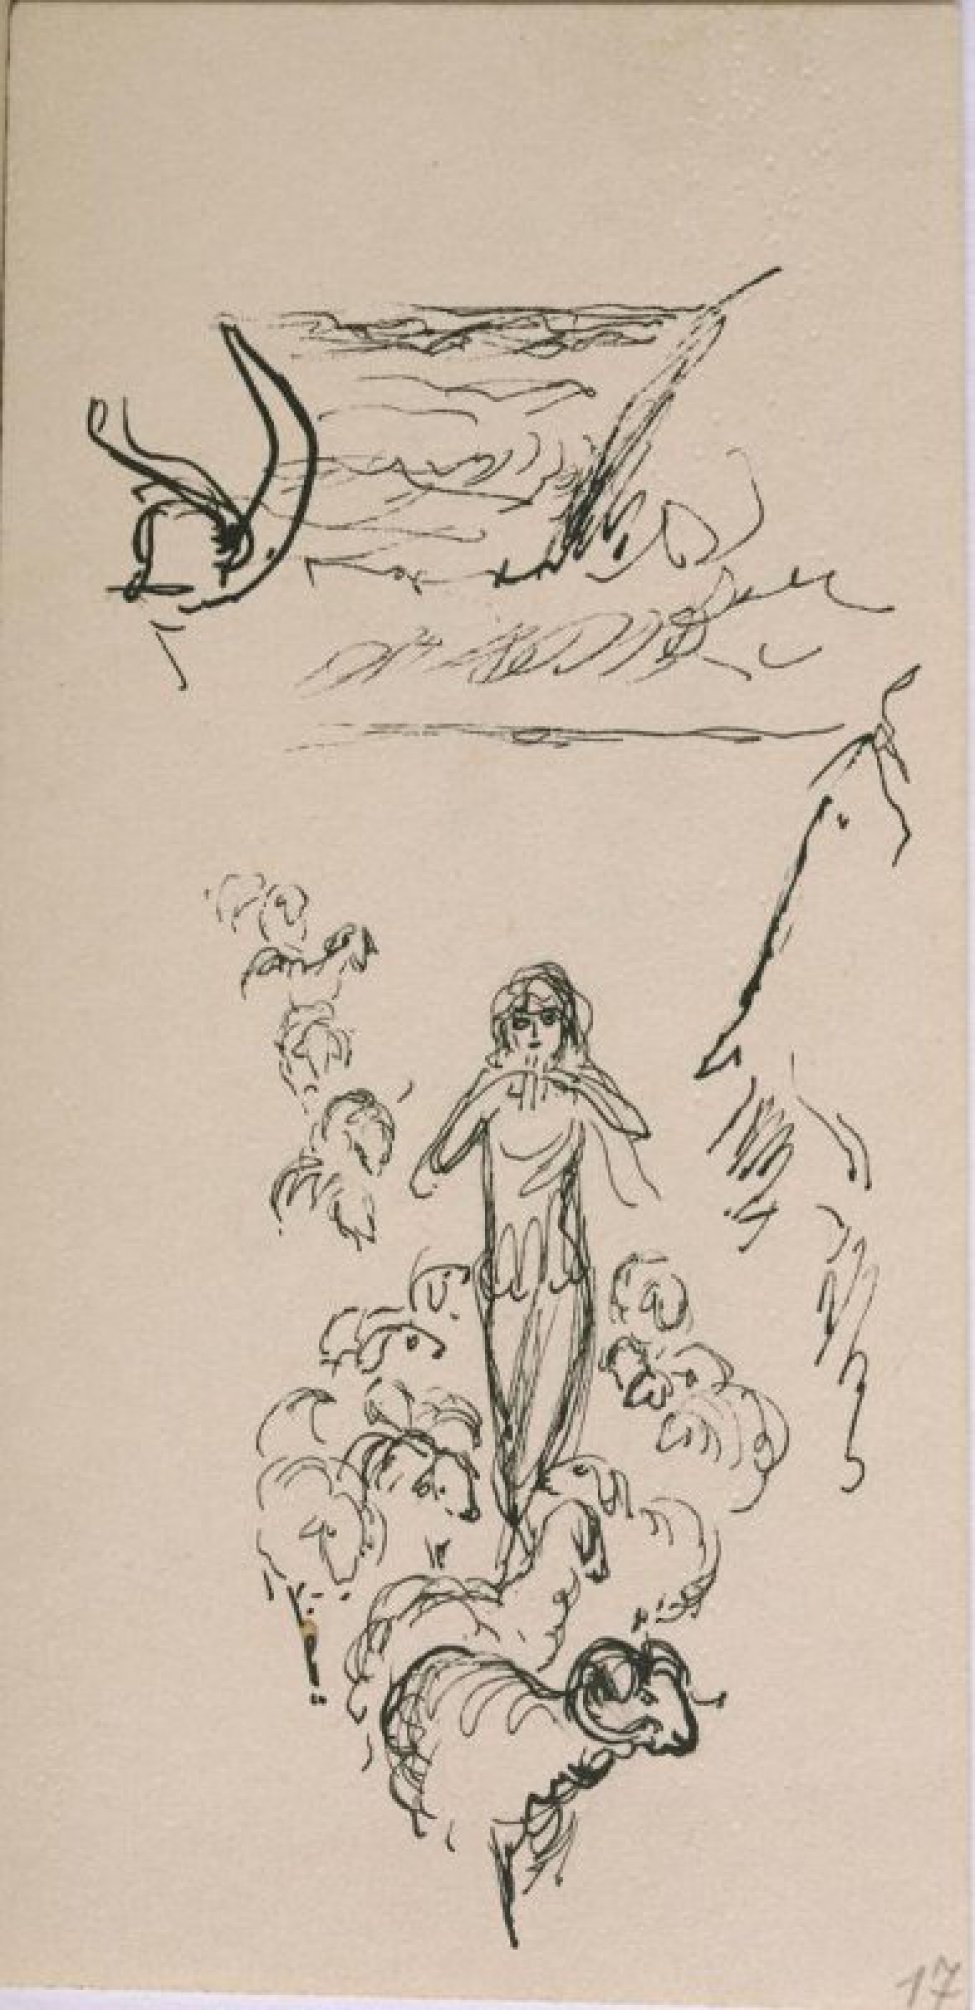 Рисунок двусторонний. I. Изображена девушка, играющая на свирели среди овец. На заднем плане - морской берег. II. Юноша среди овец.